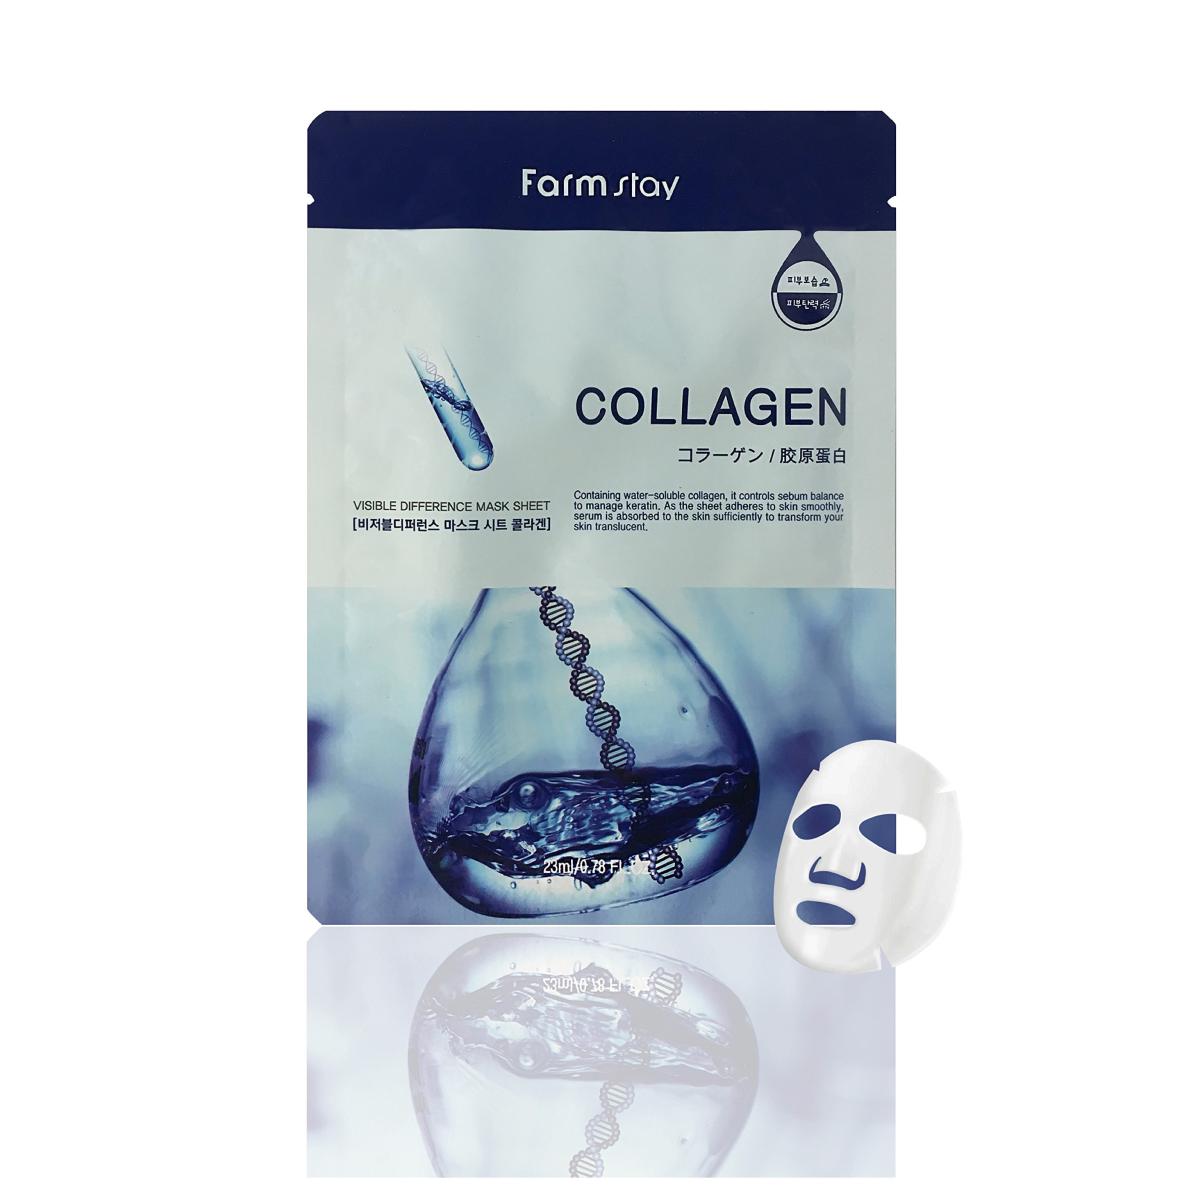 ماسک ورقه ای امپول کلاژن هیالورونیک اسید - Collagen sheet mask